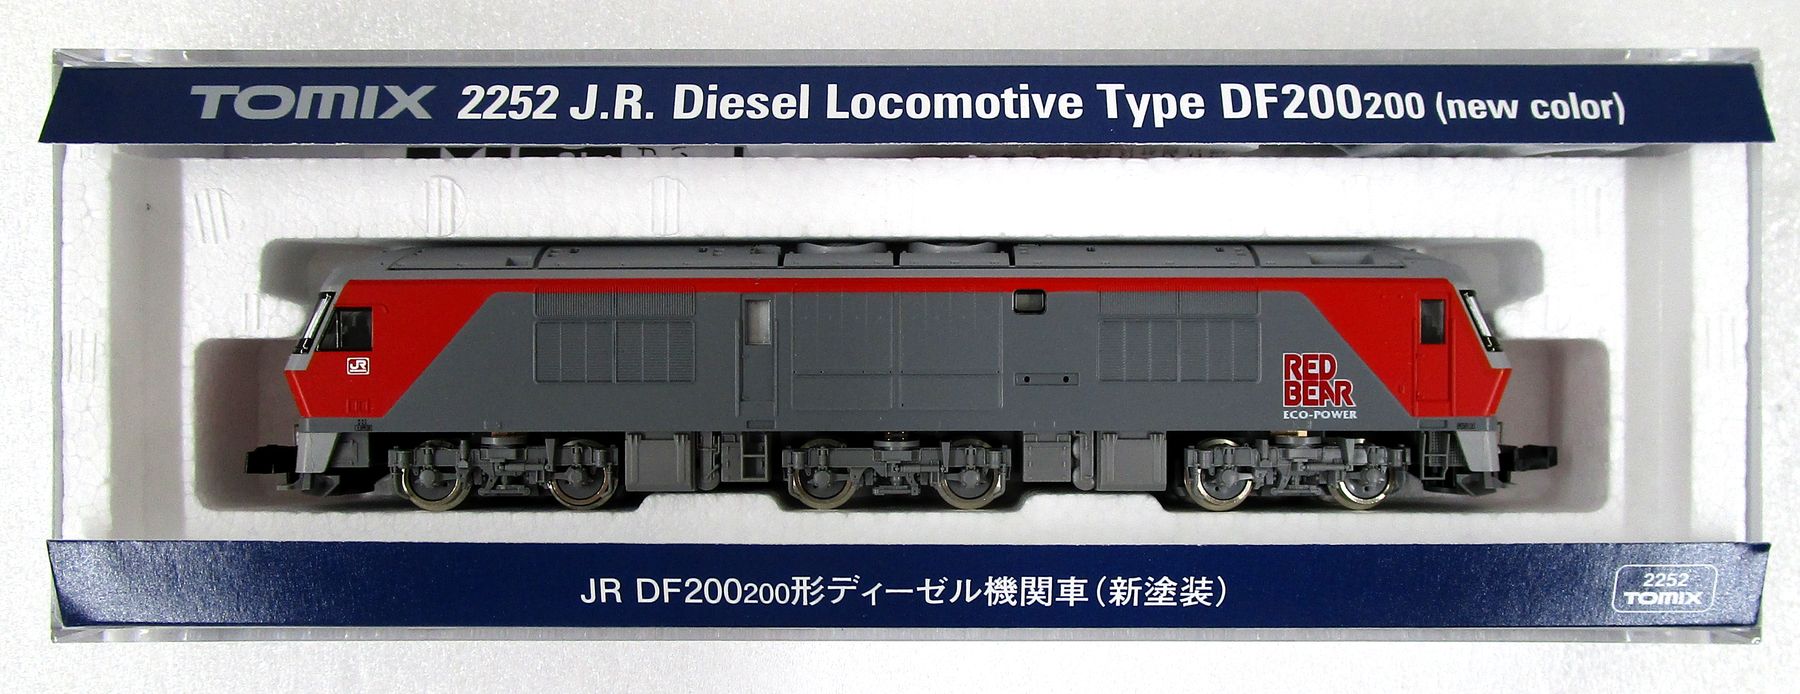 公式]鉄道模型(JR・国鉄 形式別(N)、ディーゼル機関車、DF200形